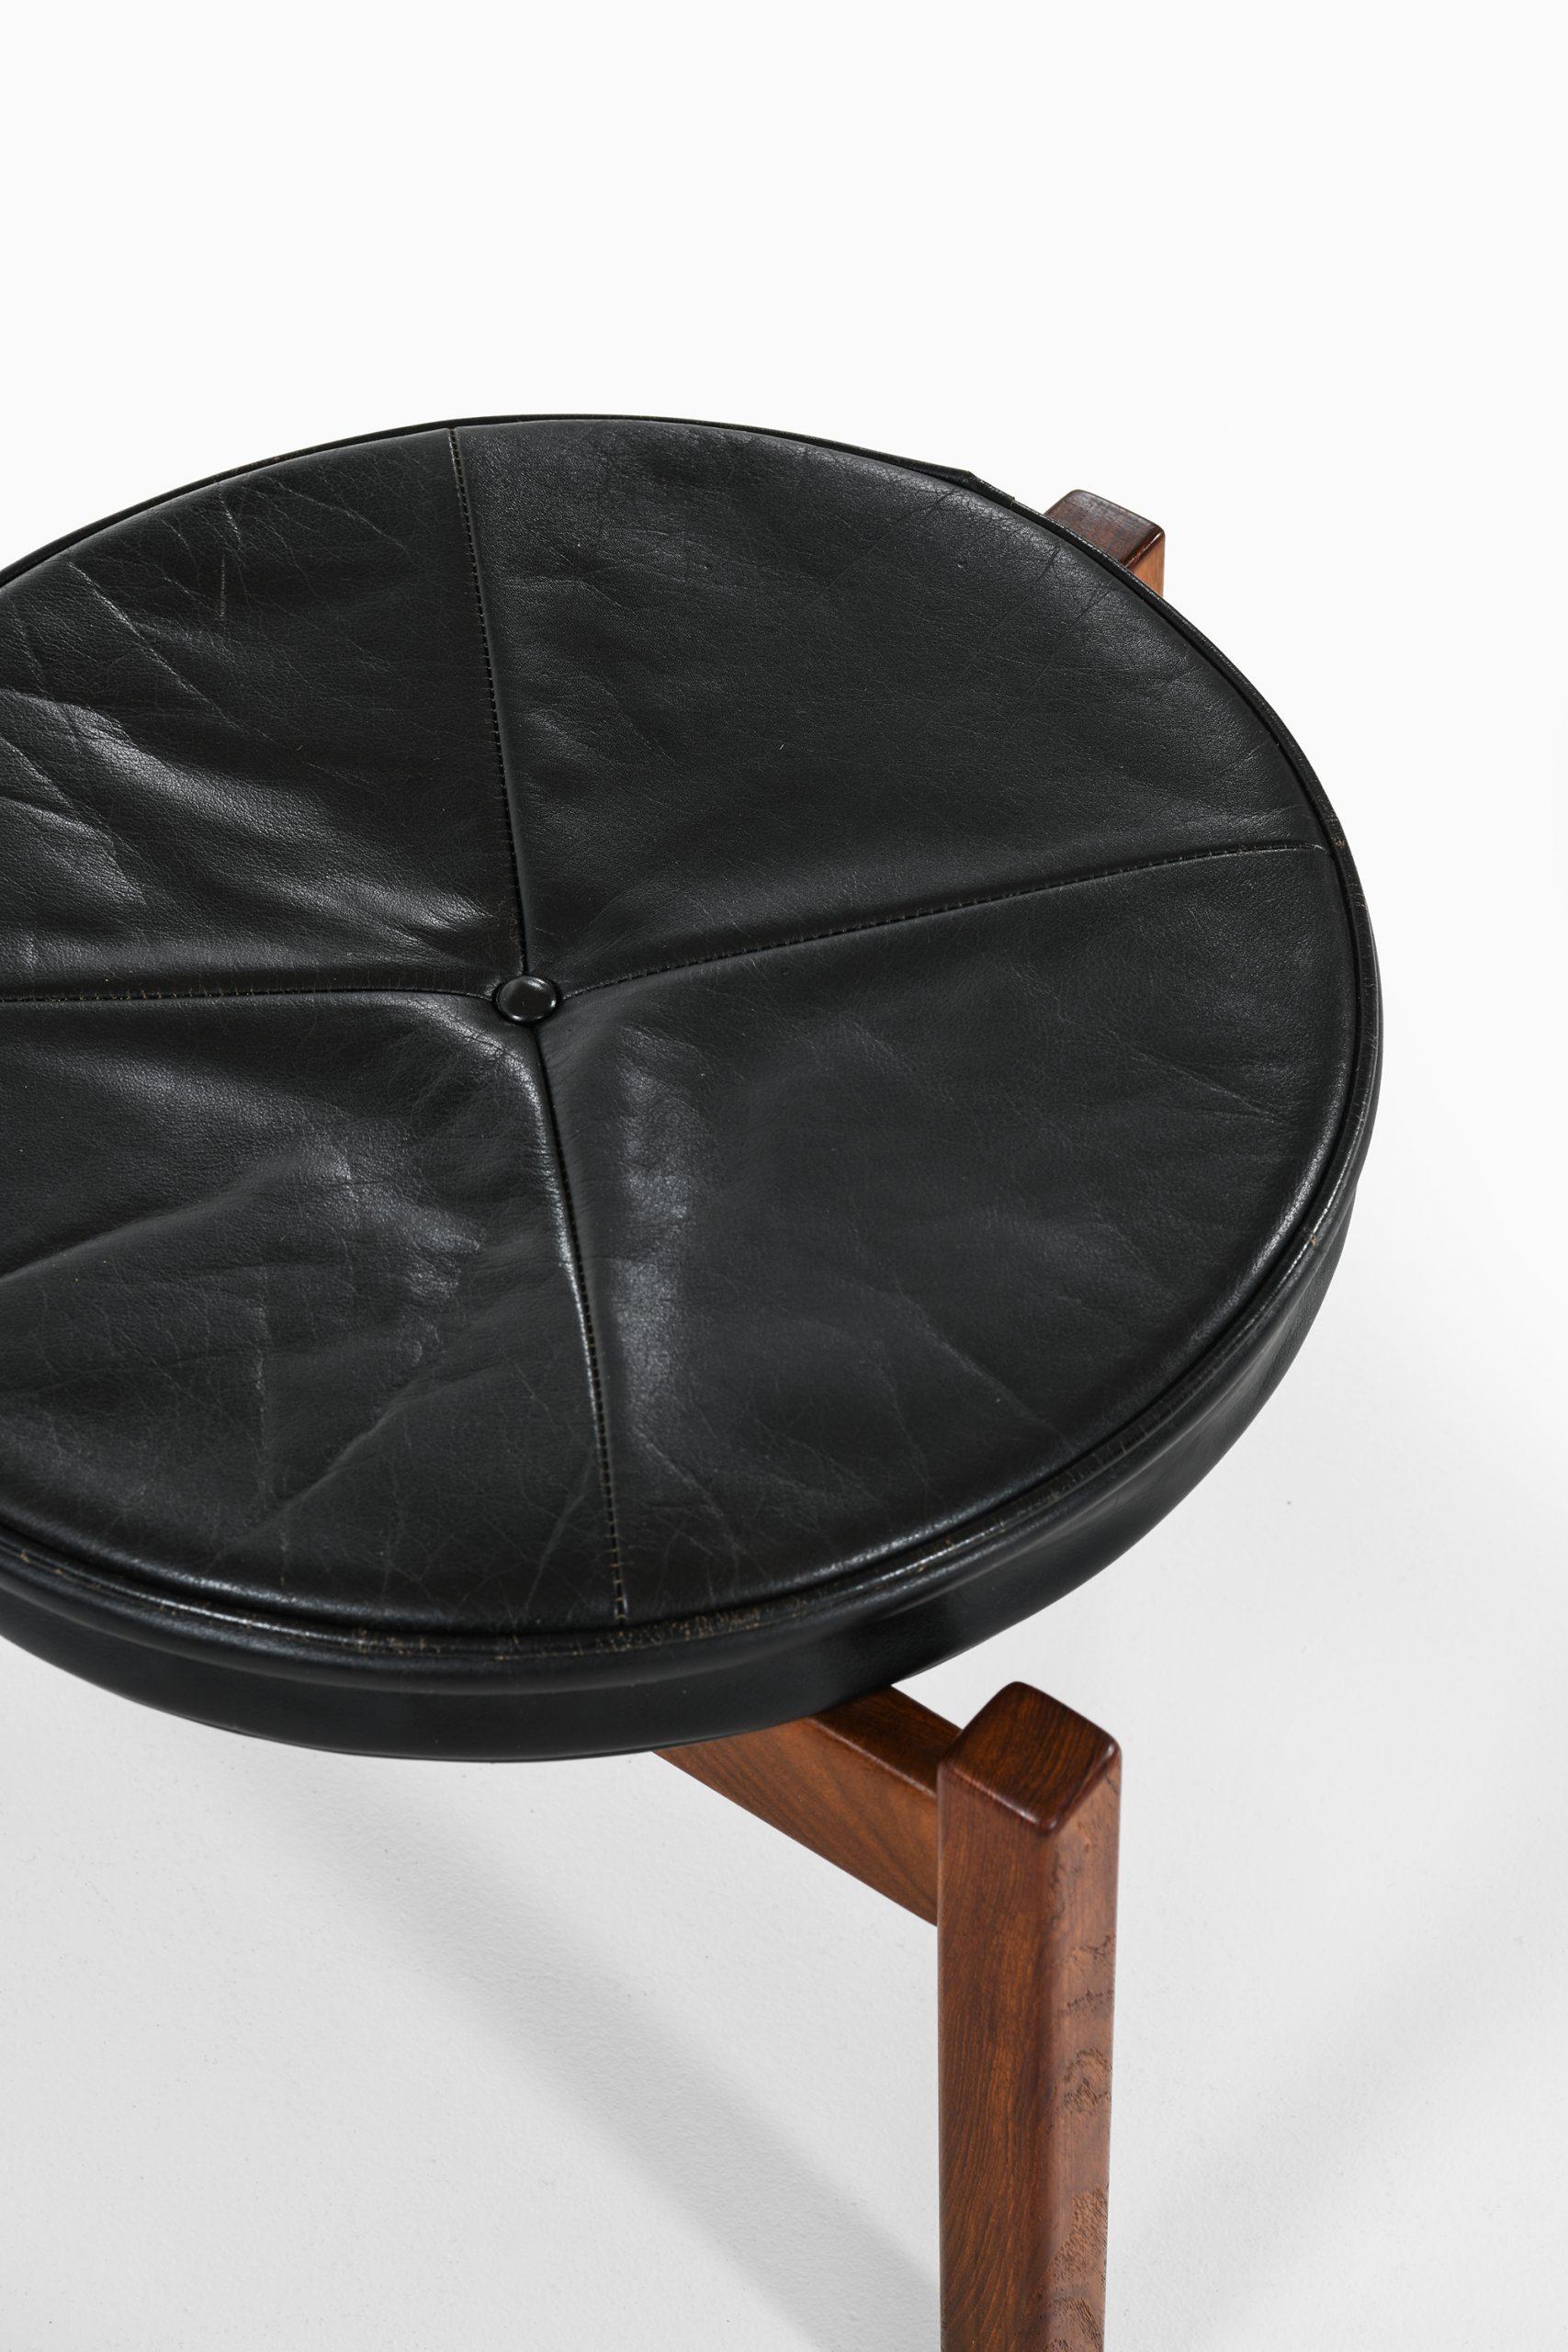 Sehr seltener 3-beiniger Sessel mit Hocker, entworfen von Bent Møller Jepsen. Produziert von Sitamo Møbler in Dänemark.
Abmessungen (B x T x H): 66 x 59 x 80 cm, SH: 42 cm.
Maße Hocker (B x T x H): 49 x 47,5 x 36 cm.